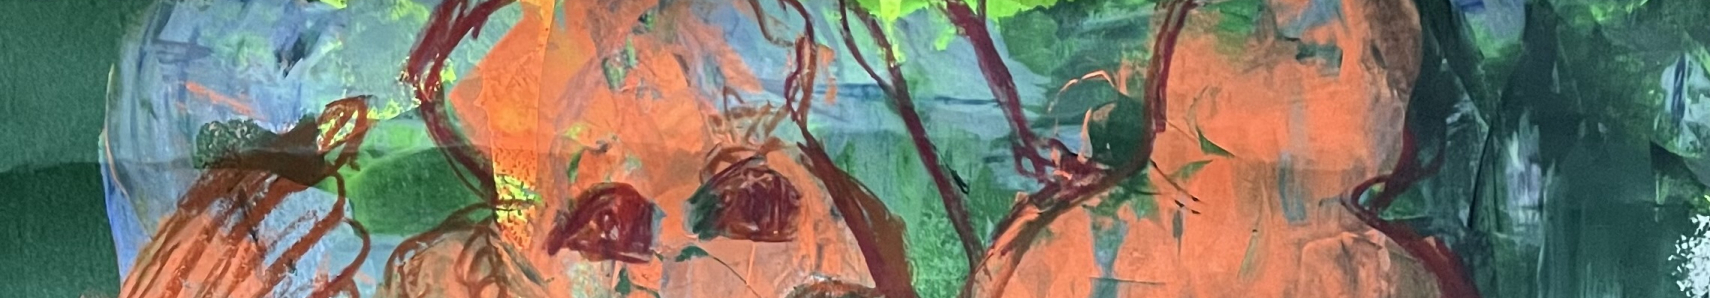 Sylvia Gatz "Jungle Dance" (Detail) Acryl auf Leinwand. 70 x 100 cm, 2020